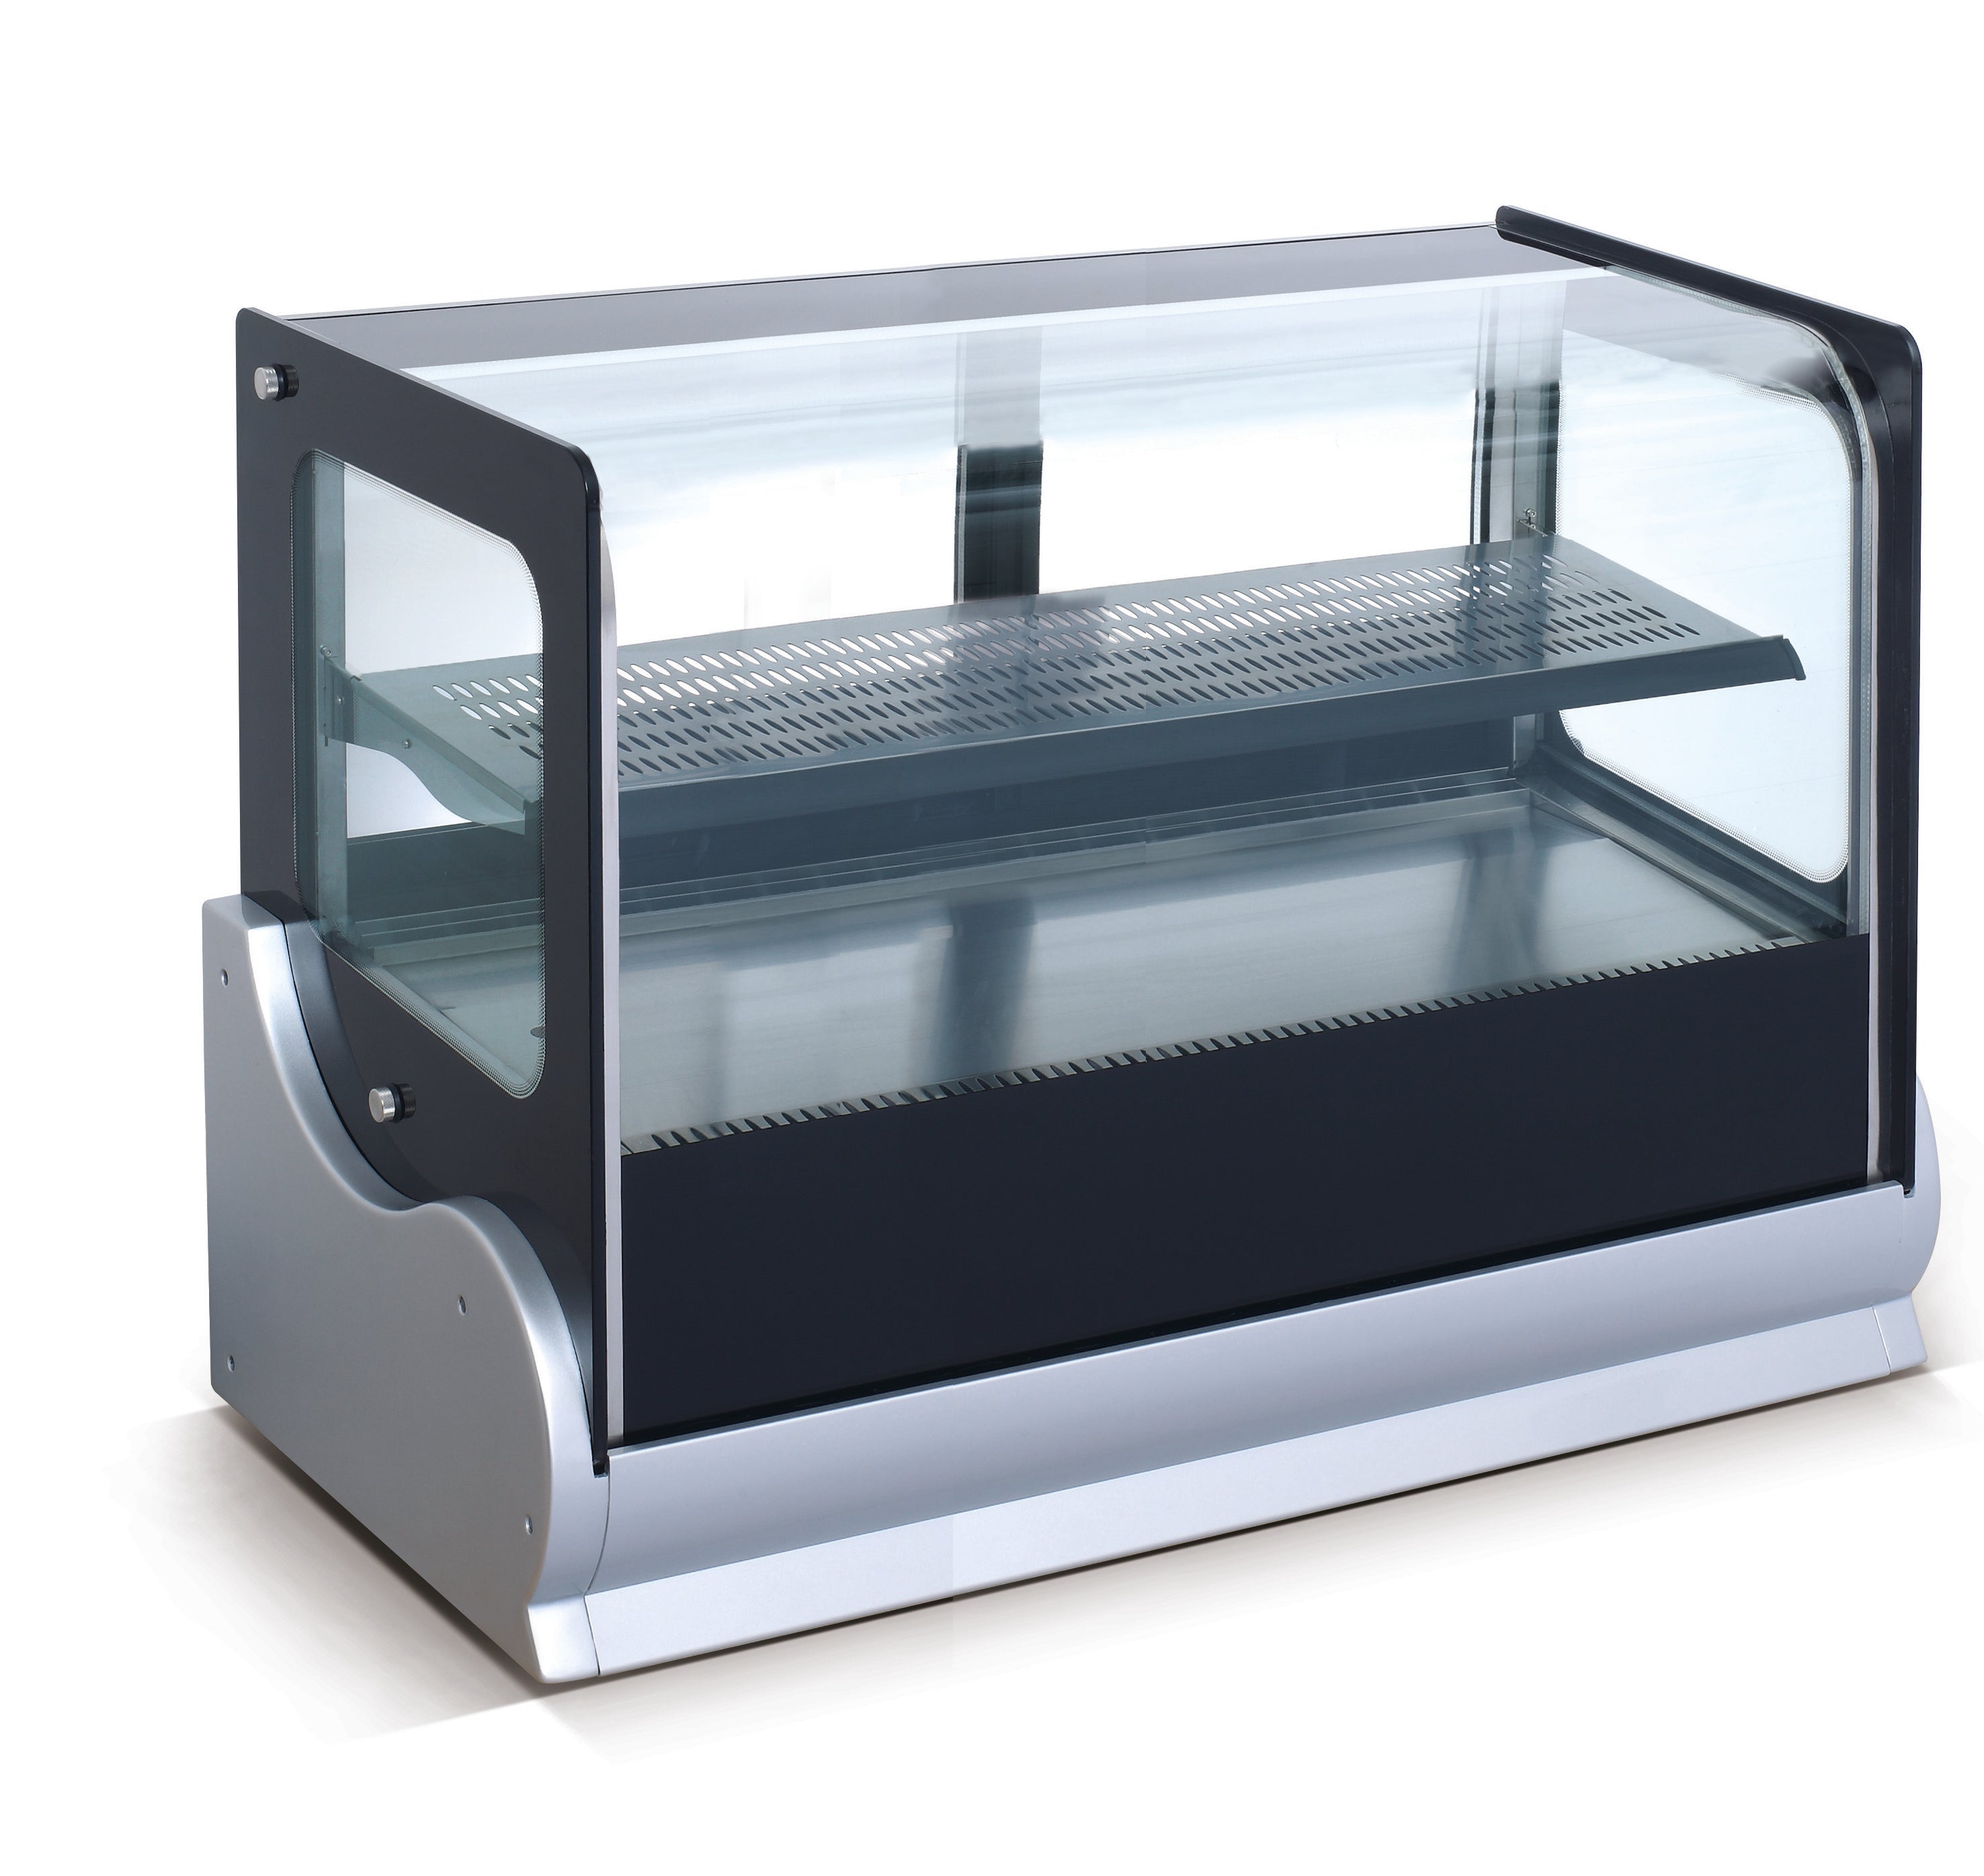 Anvil Countertop Hot Showcase 140Lt ICE-DGHV0530 Countertop Hot Food Displays